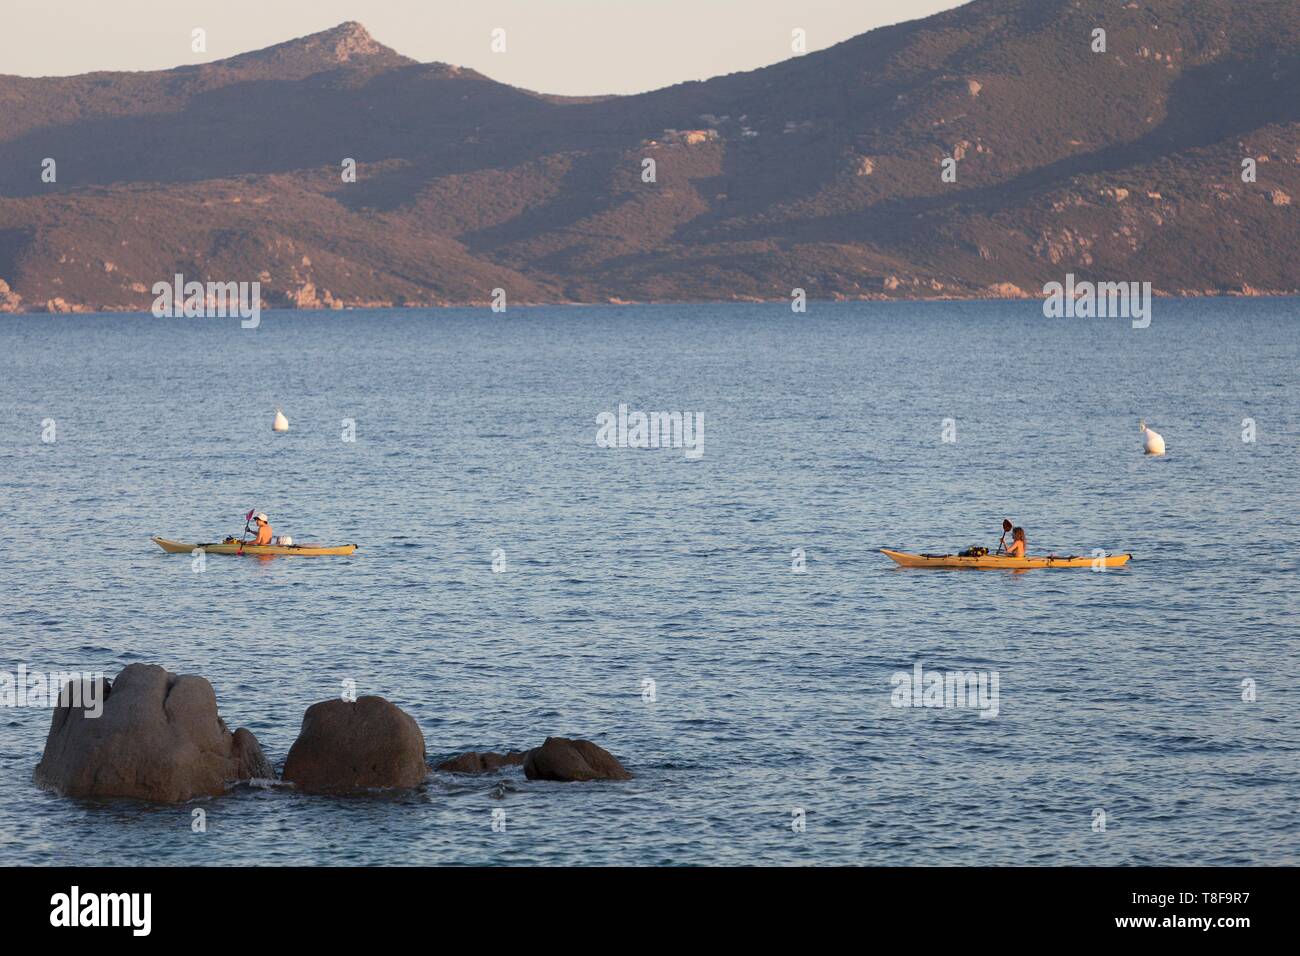 France, Corse du Sud, Serra di Ferro, Porto Pollo, kayaks in the Gulf of Valinco Stock Photo